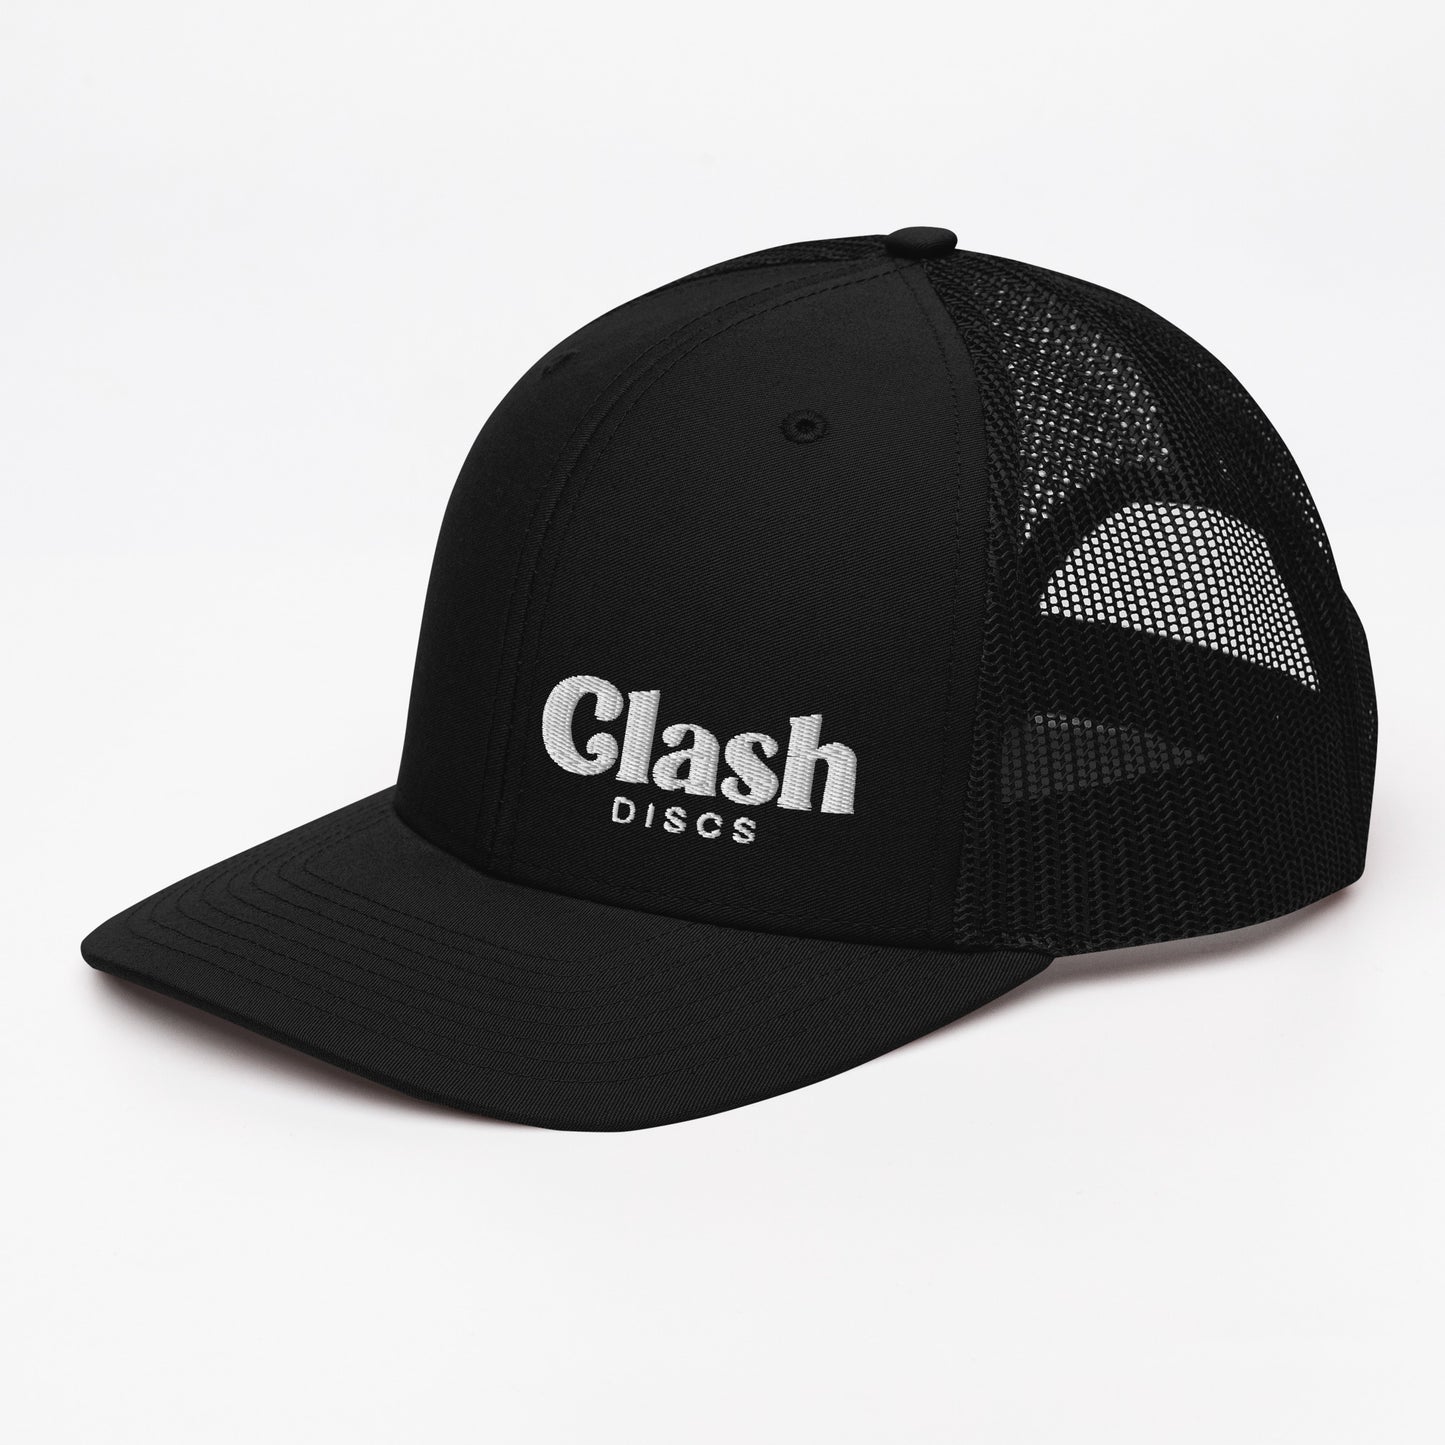 Clash Stacked Trucker Cap